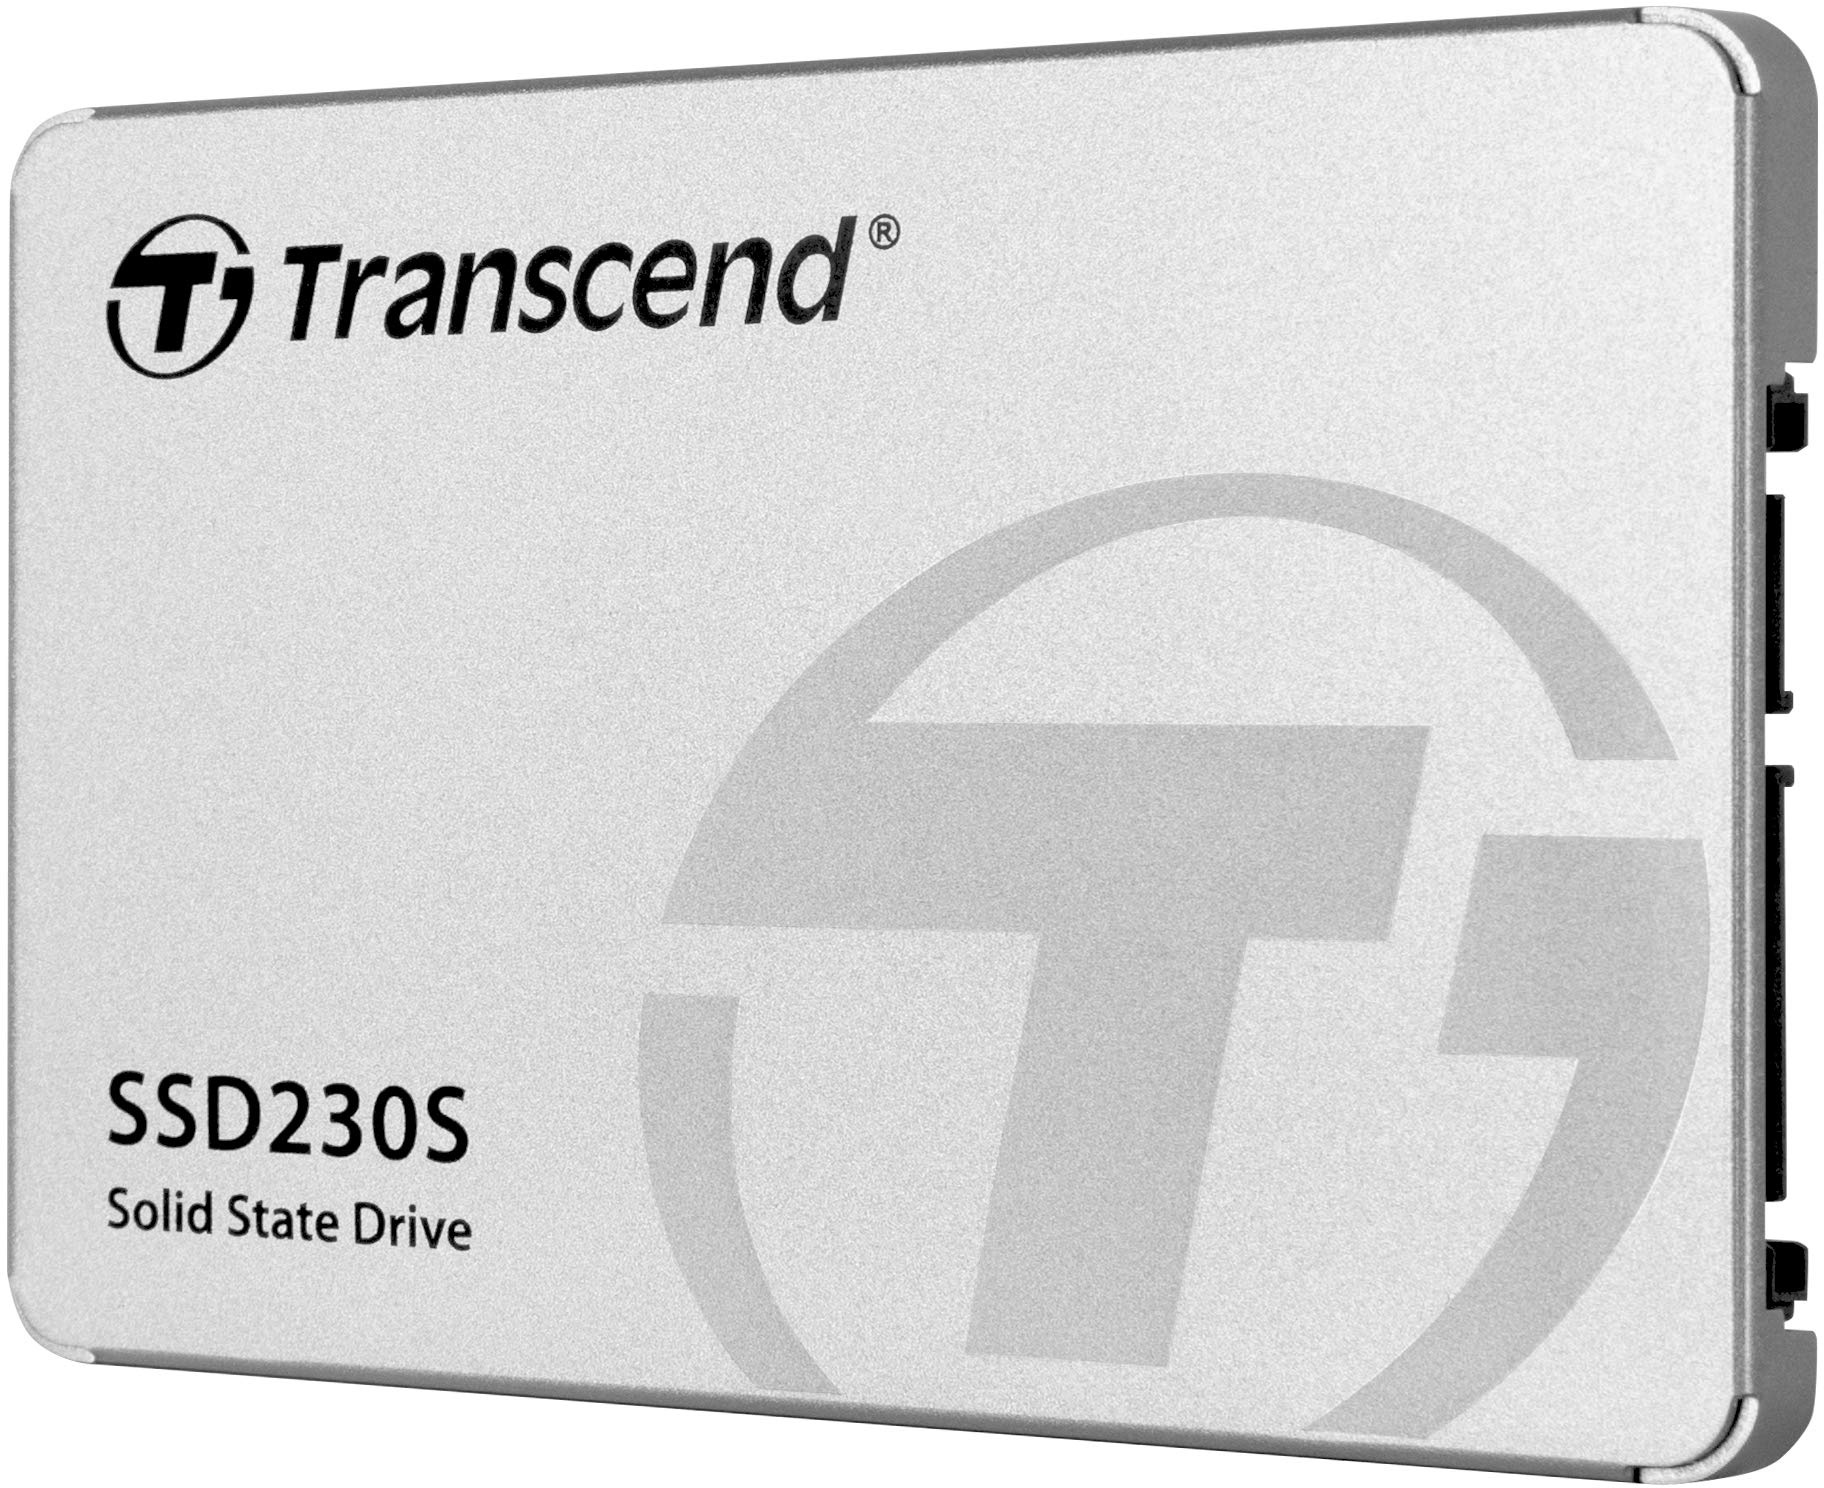 Transcend 512GB SATA III 6Gb/s interne 2.5” SSD (HDD) für Aufrüstung von Desktop-PCs, Laptops, Notebooks und Spielekonsolen TS512GSSD230S